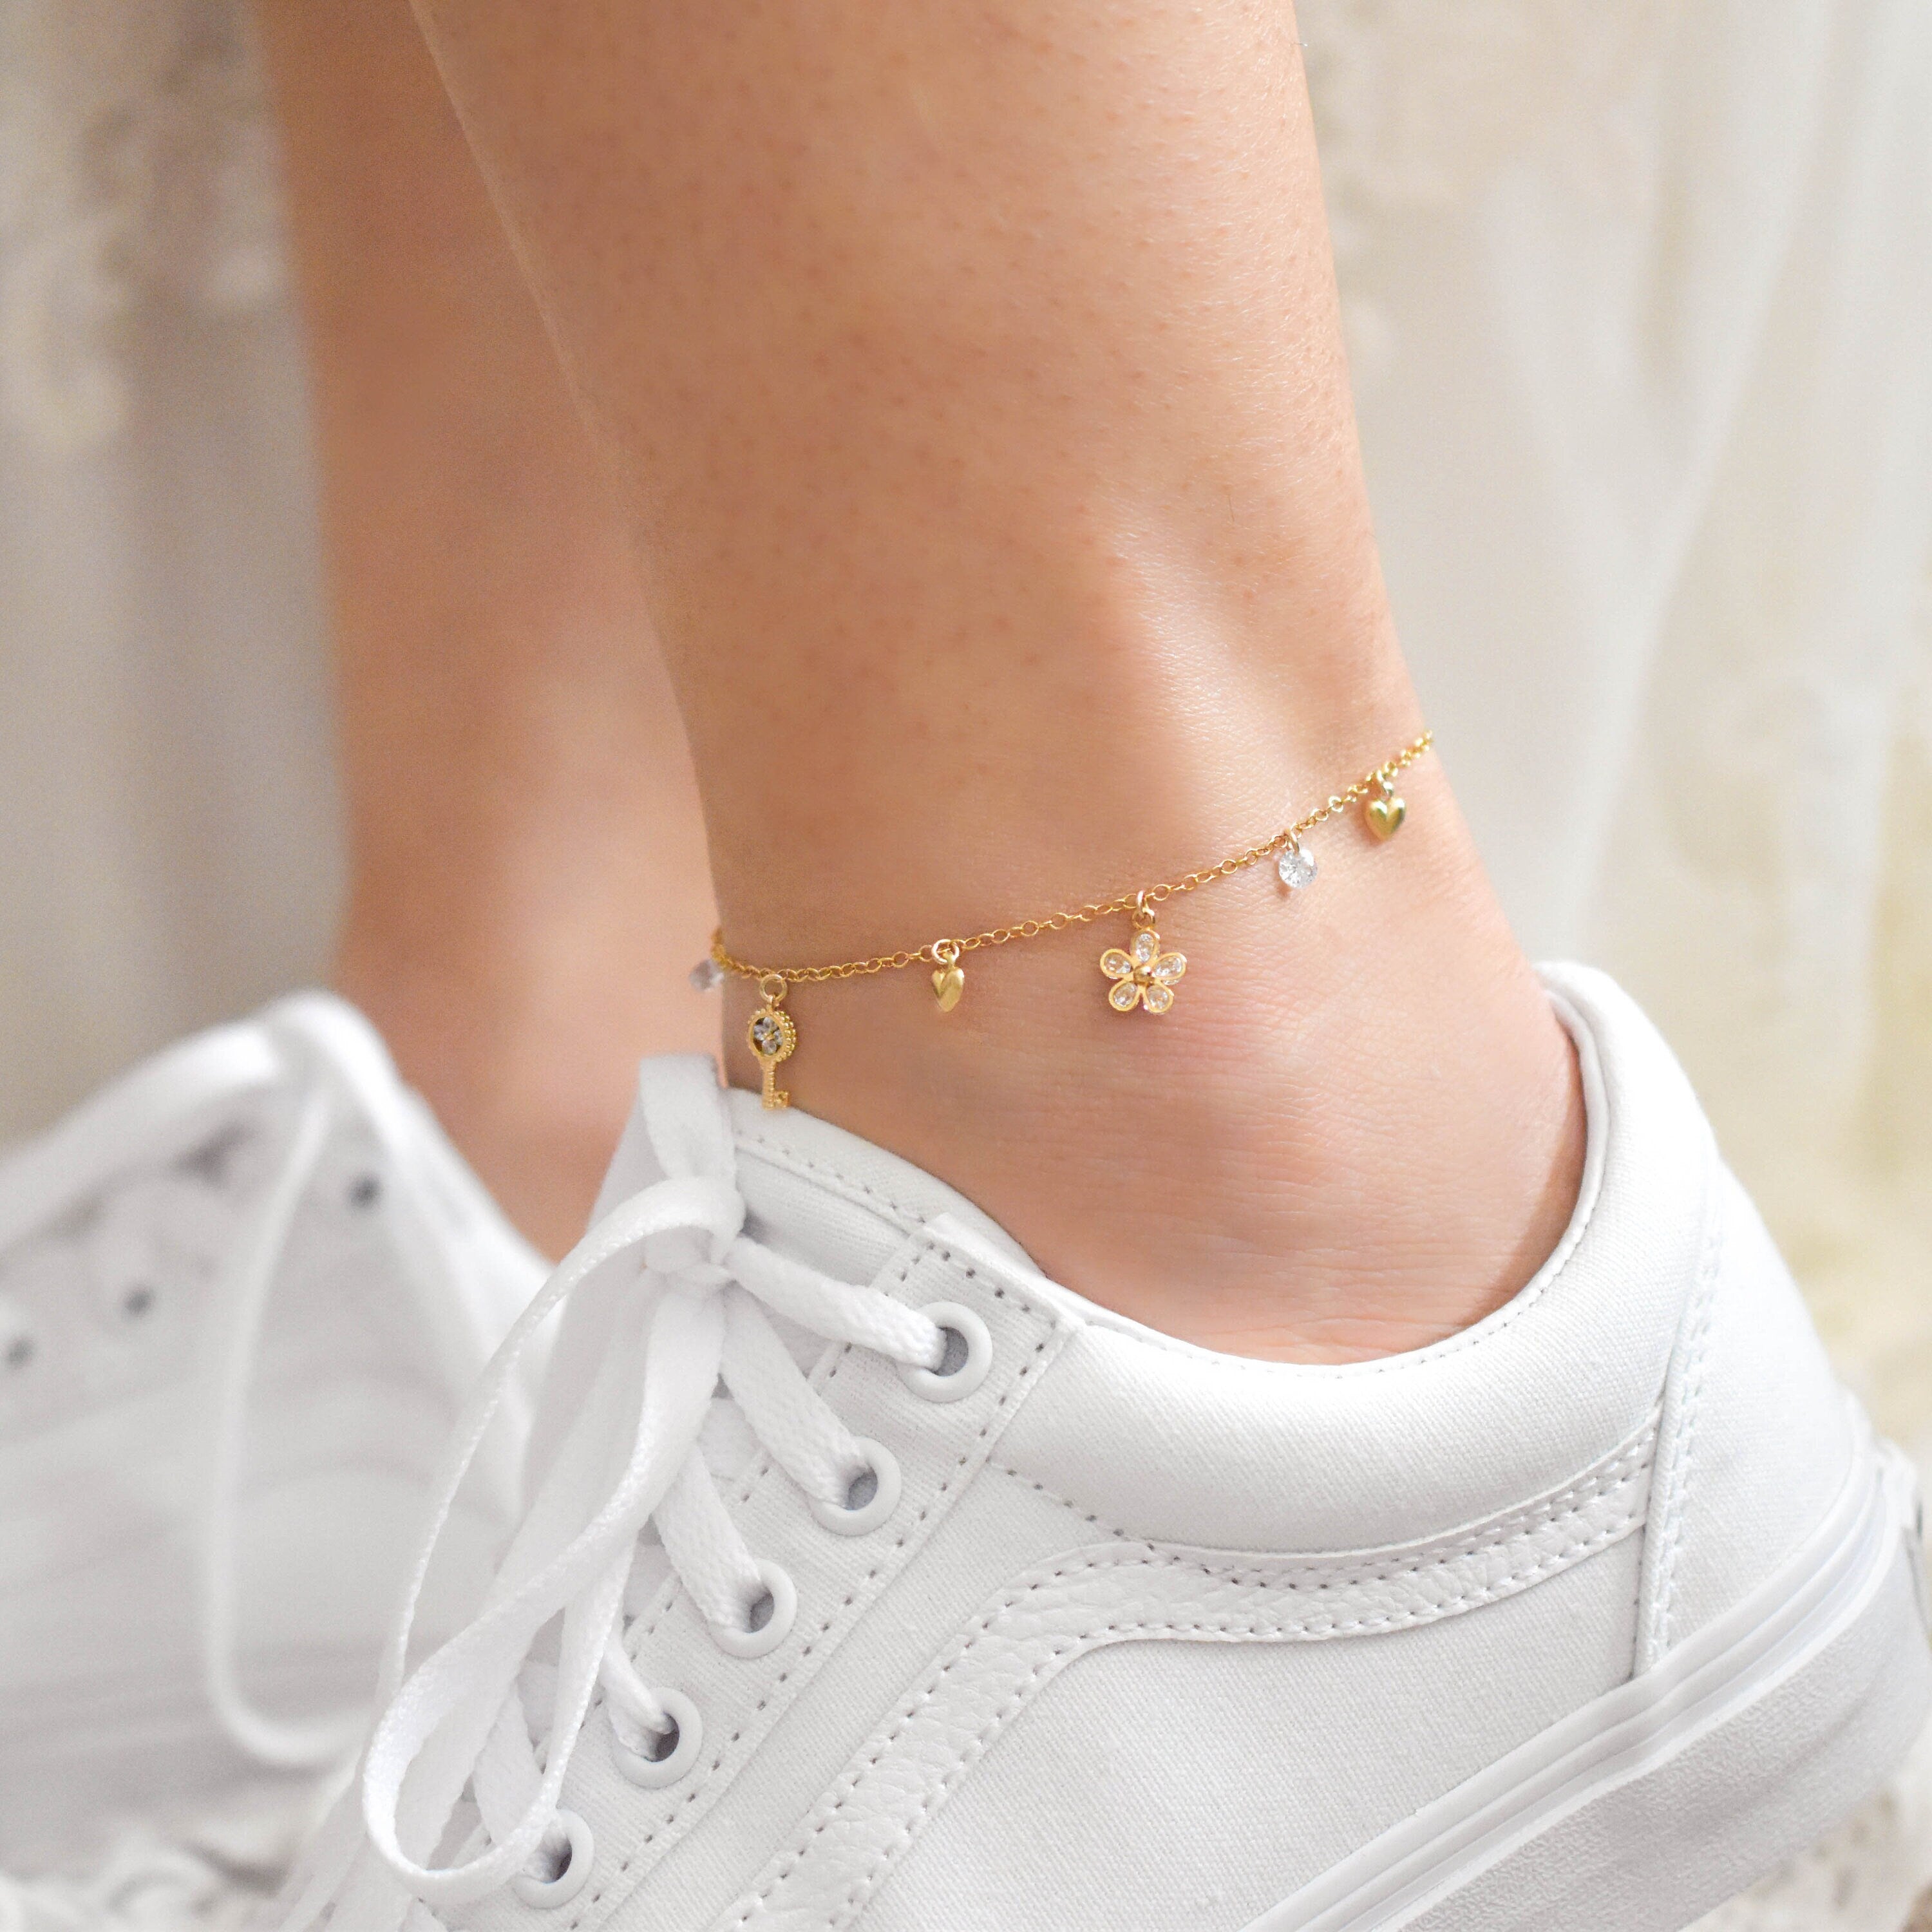 Sparkly Charm Anklet - gold filled anklet, charm anklet, pretty anklet, cute anklet, flower anklet, ankle bracelet, gold anklet |GFA00001